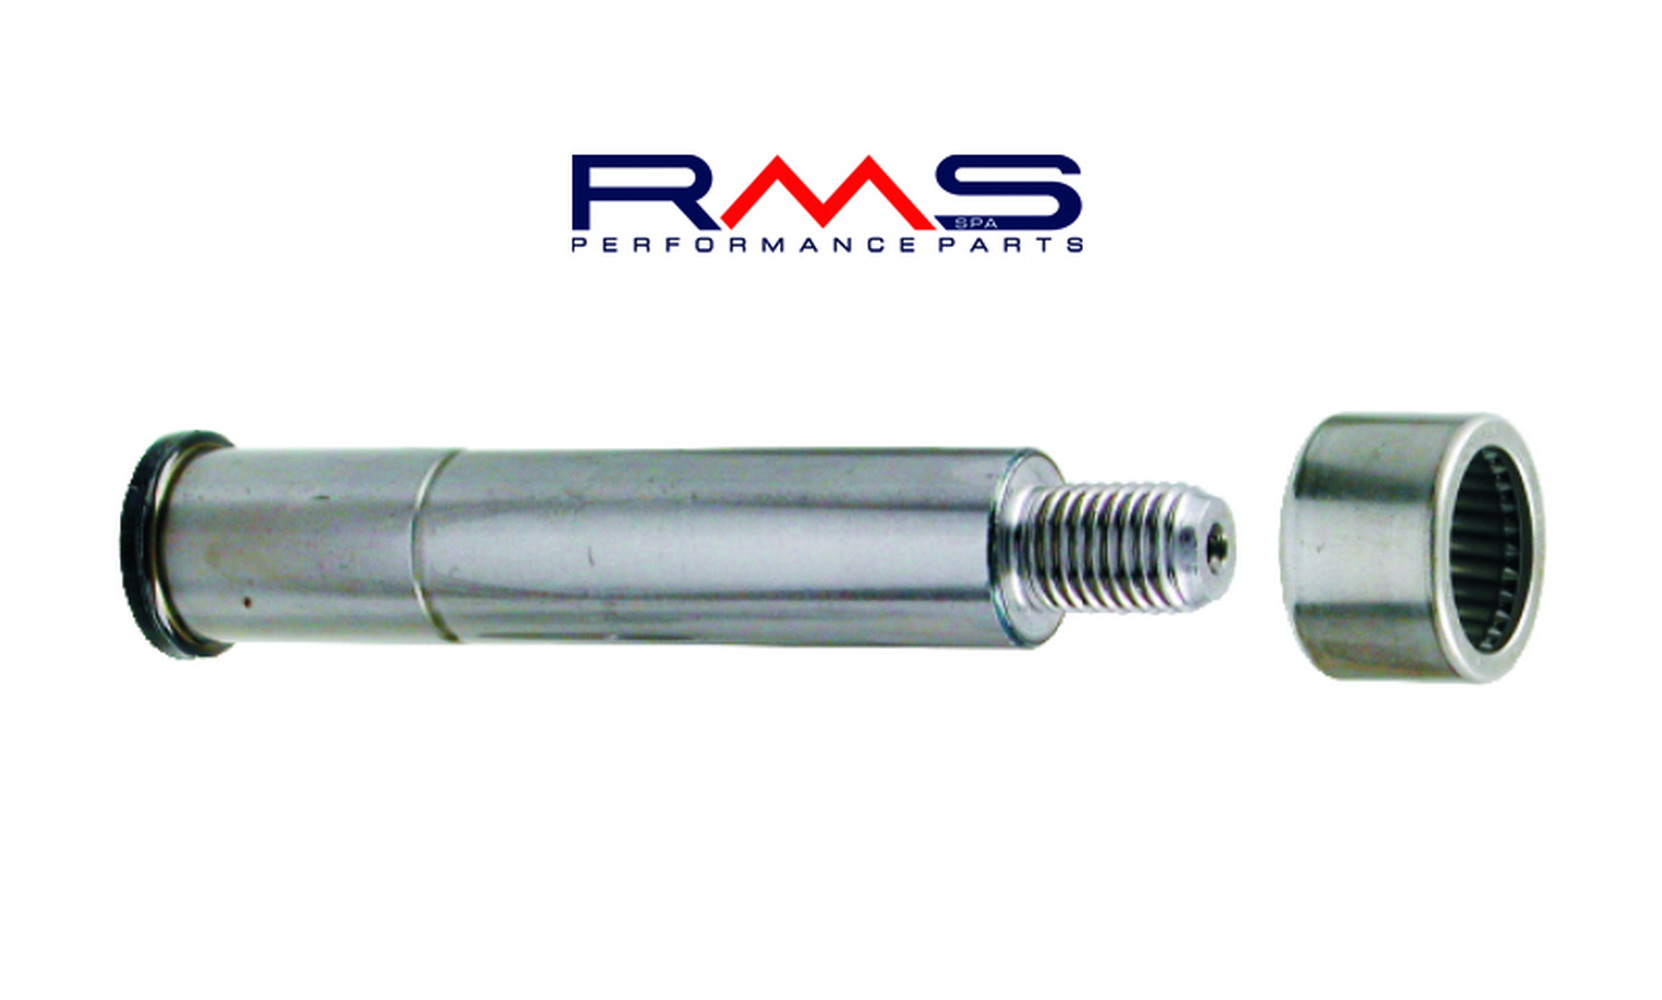 Obrázek produktu Suspension pin RMS 225180090 přední with grease nipple 225180090